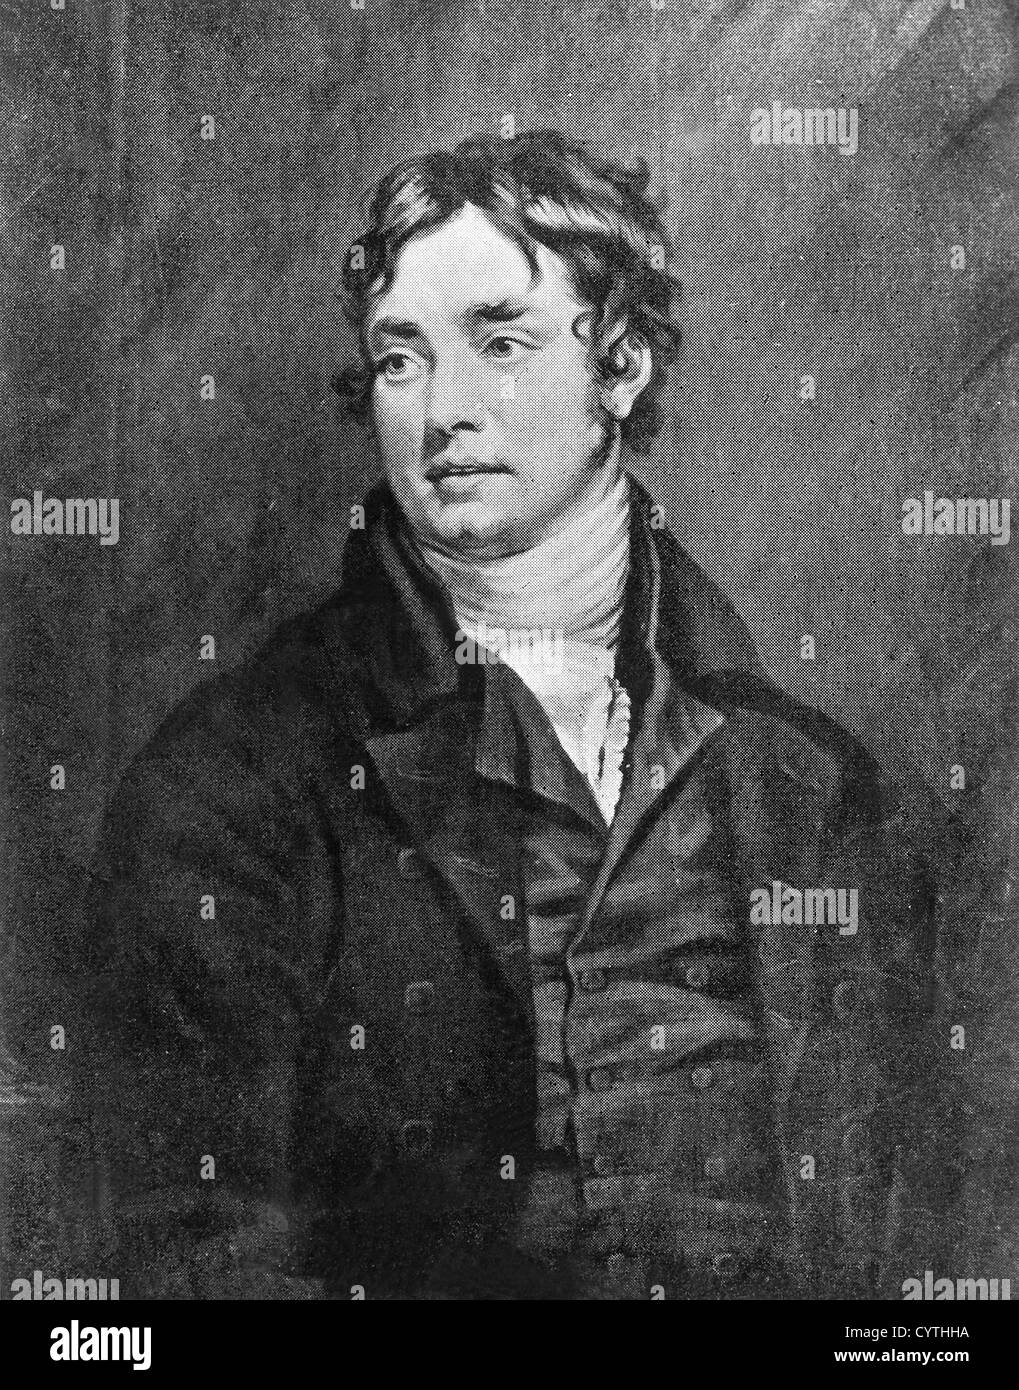 Samuel Taylor Coleridge, poète anglais Banque D'Images